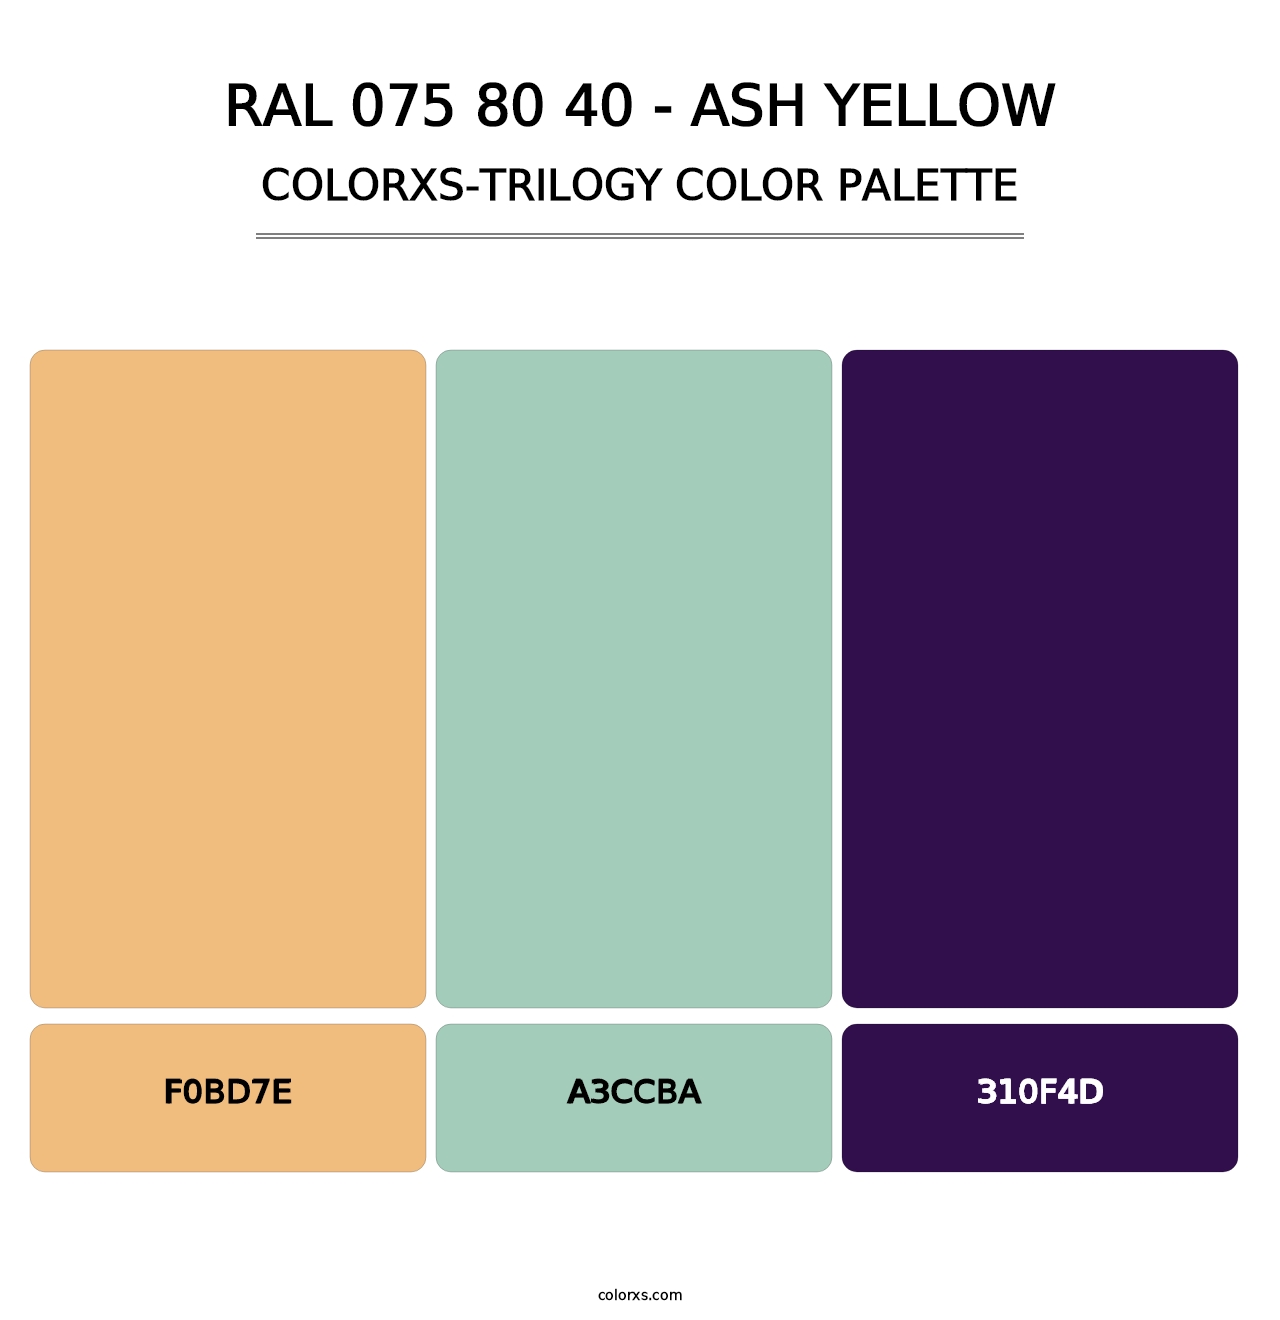 RAL 075 80 40 - Ash Yellow - Colorxs Trilogy Palette